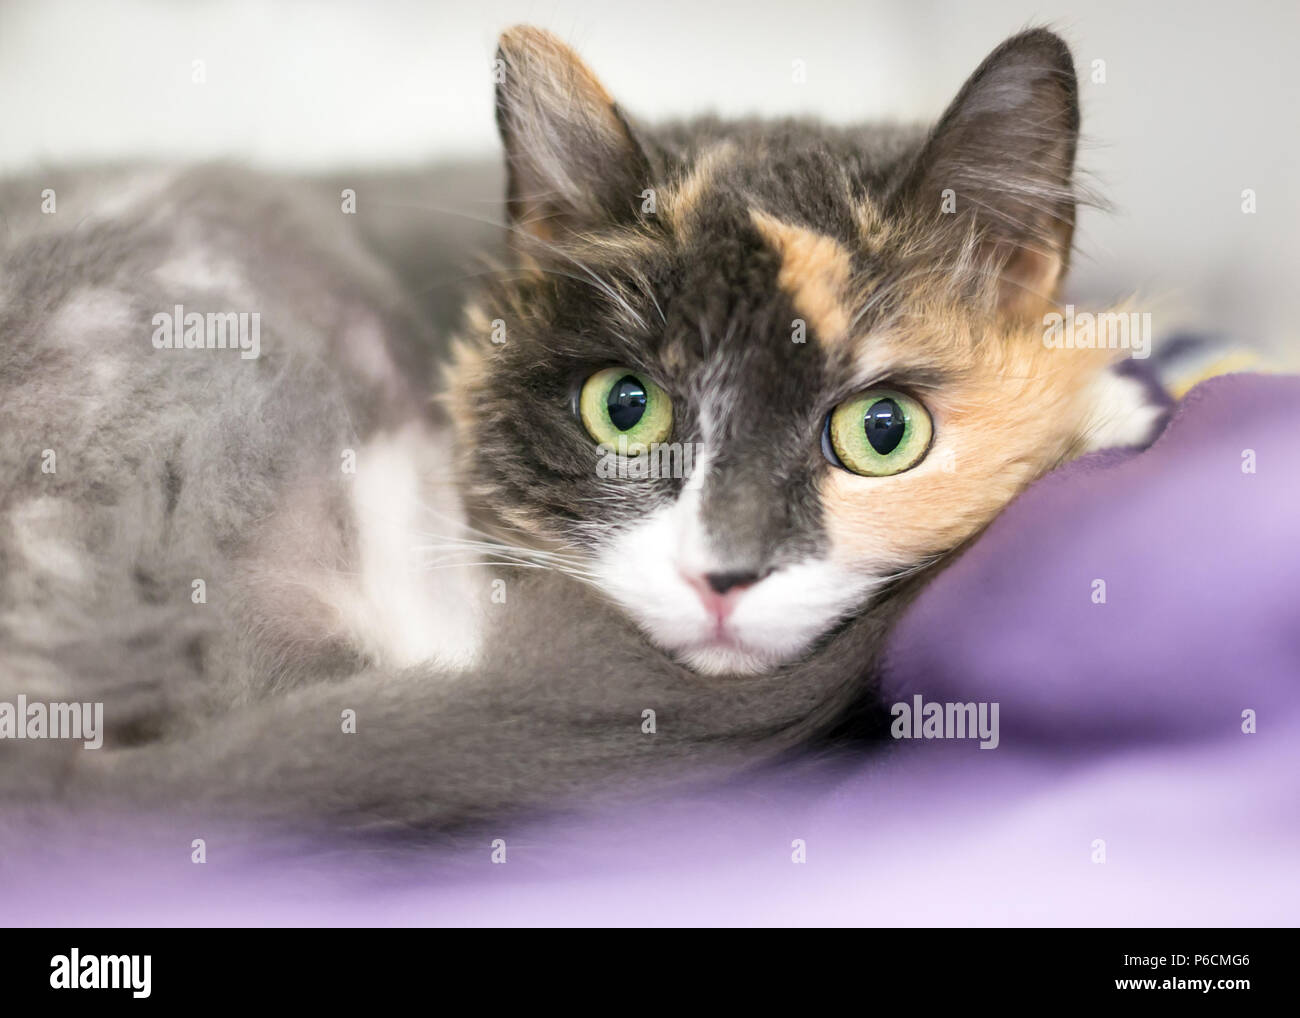 Un diluisca gatta calico rannicchiato su una coperta Foto Stock